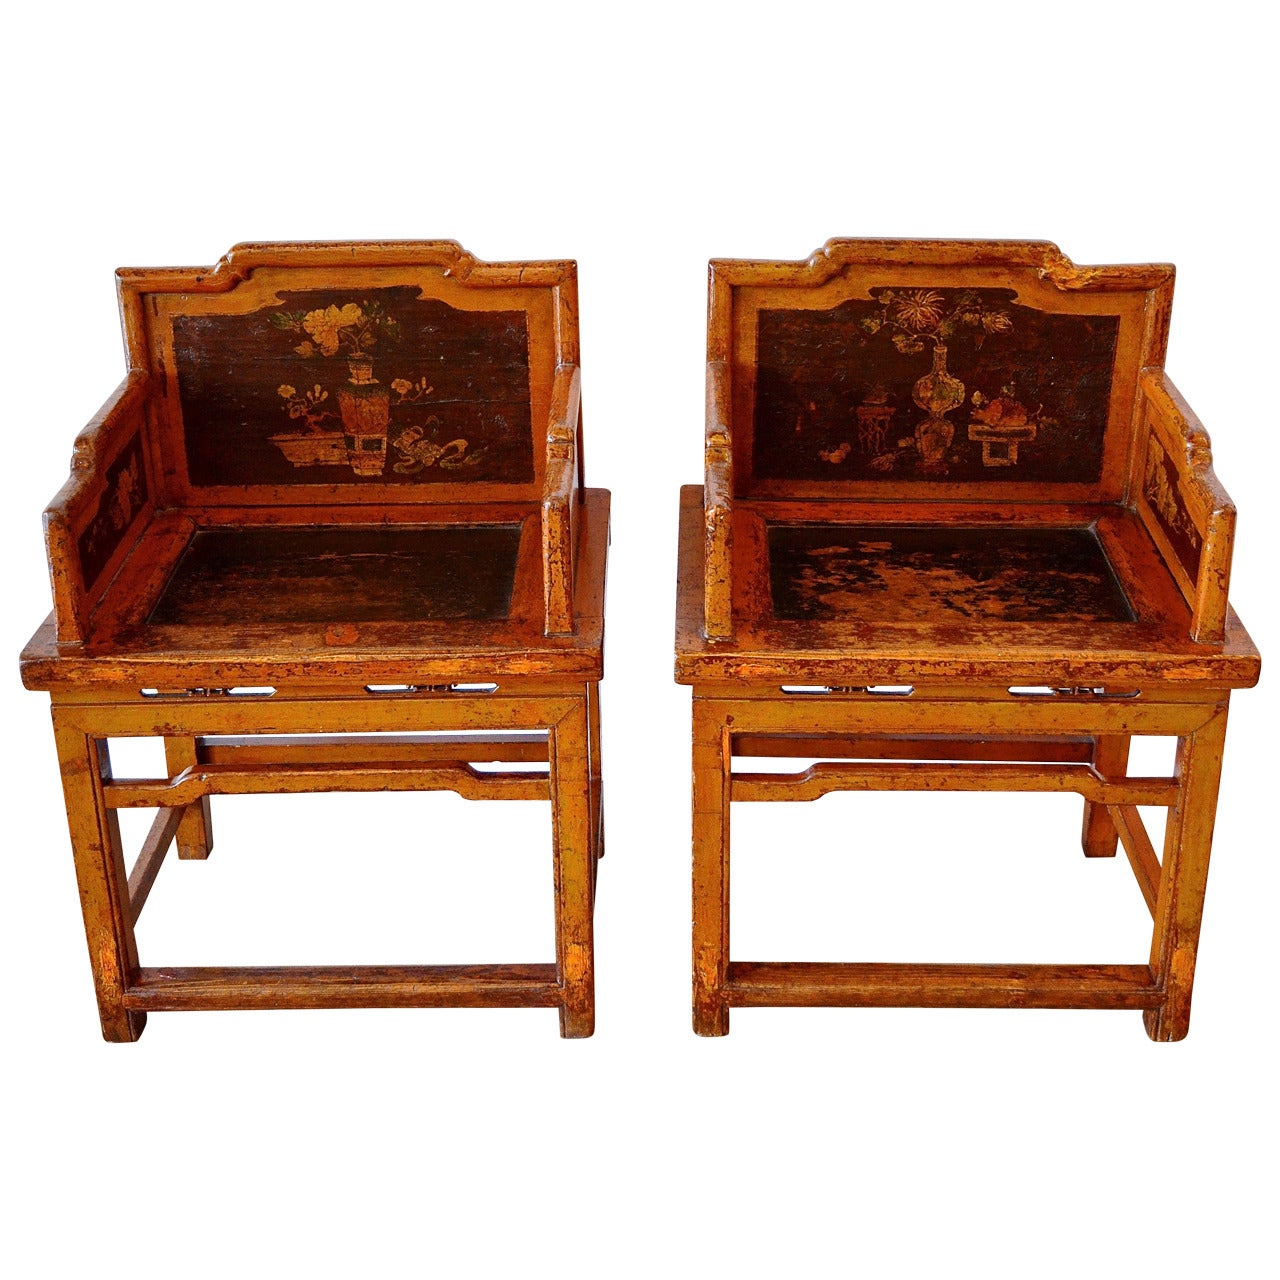 Pair of Meiguiyi Rose Chairs, circa 1880